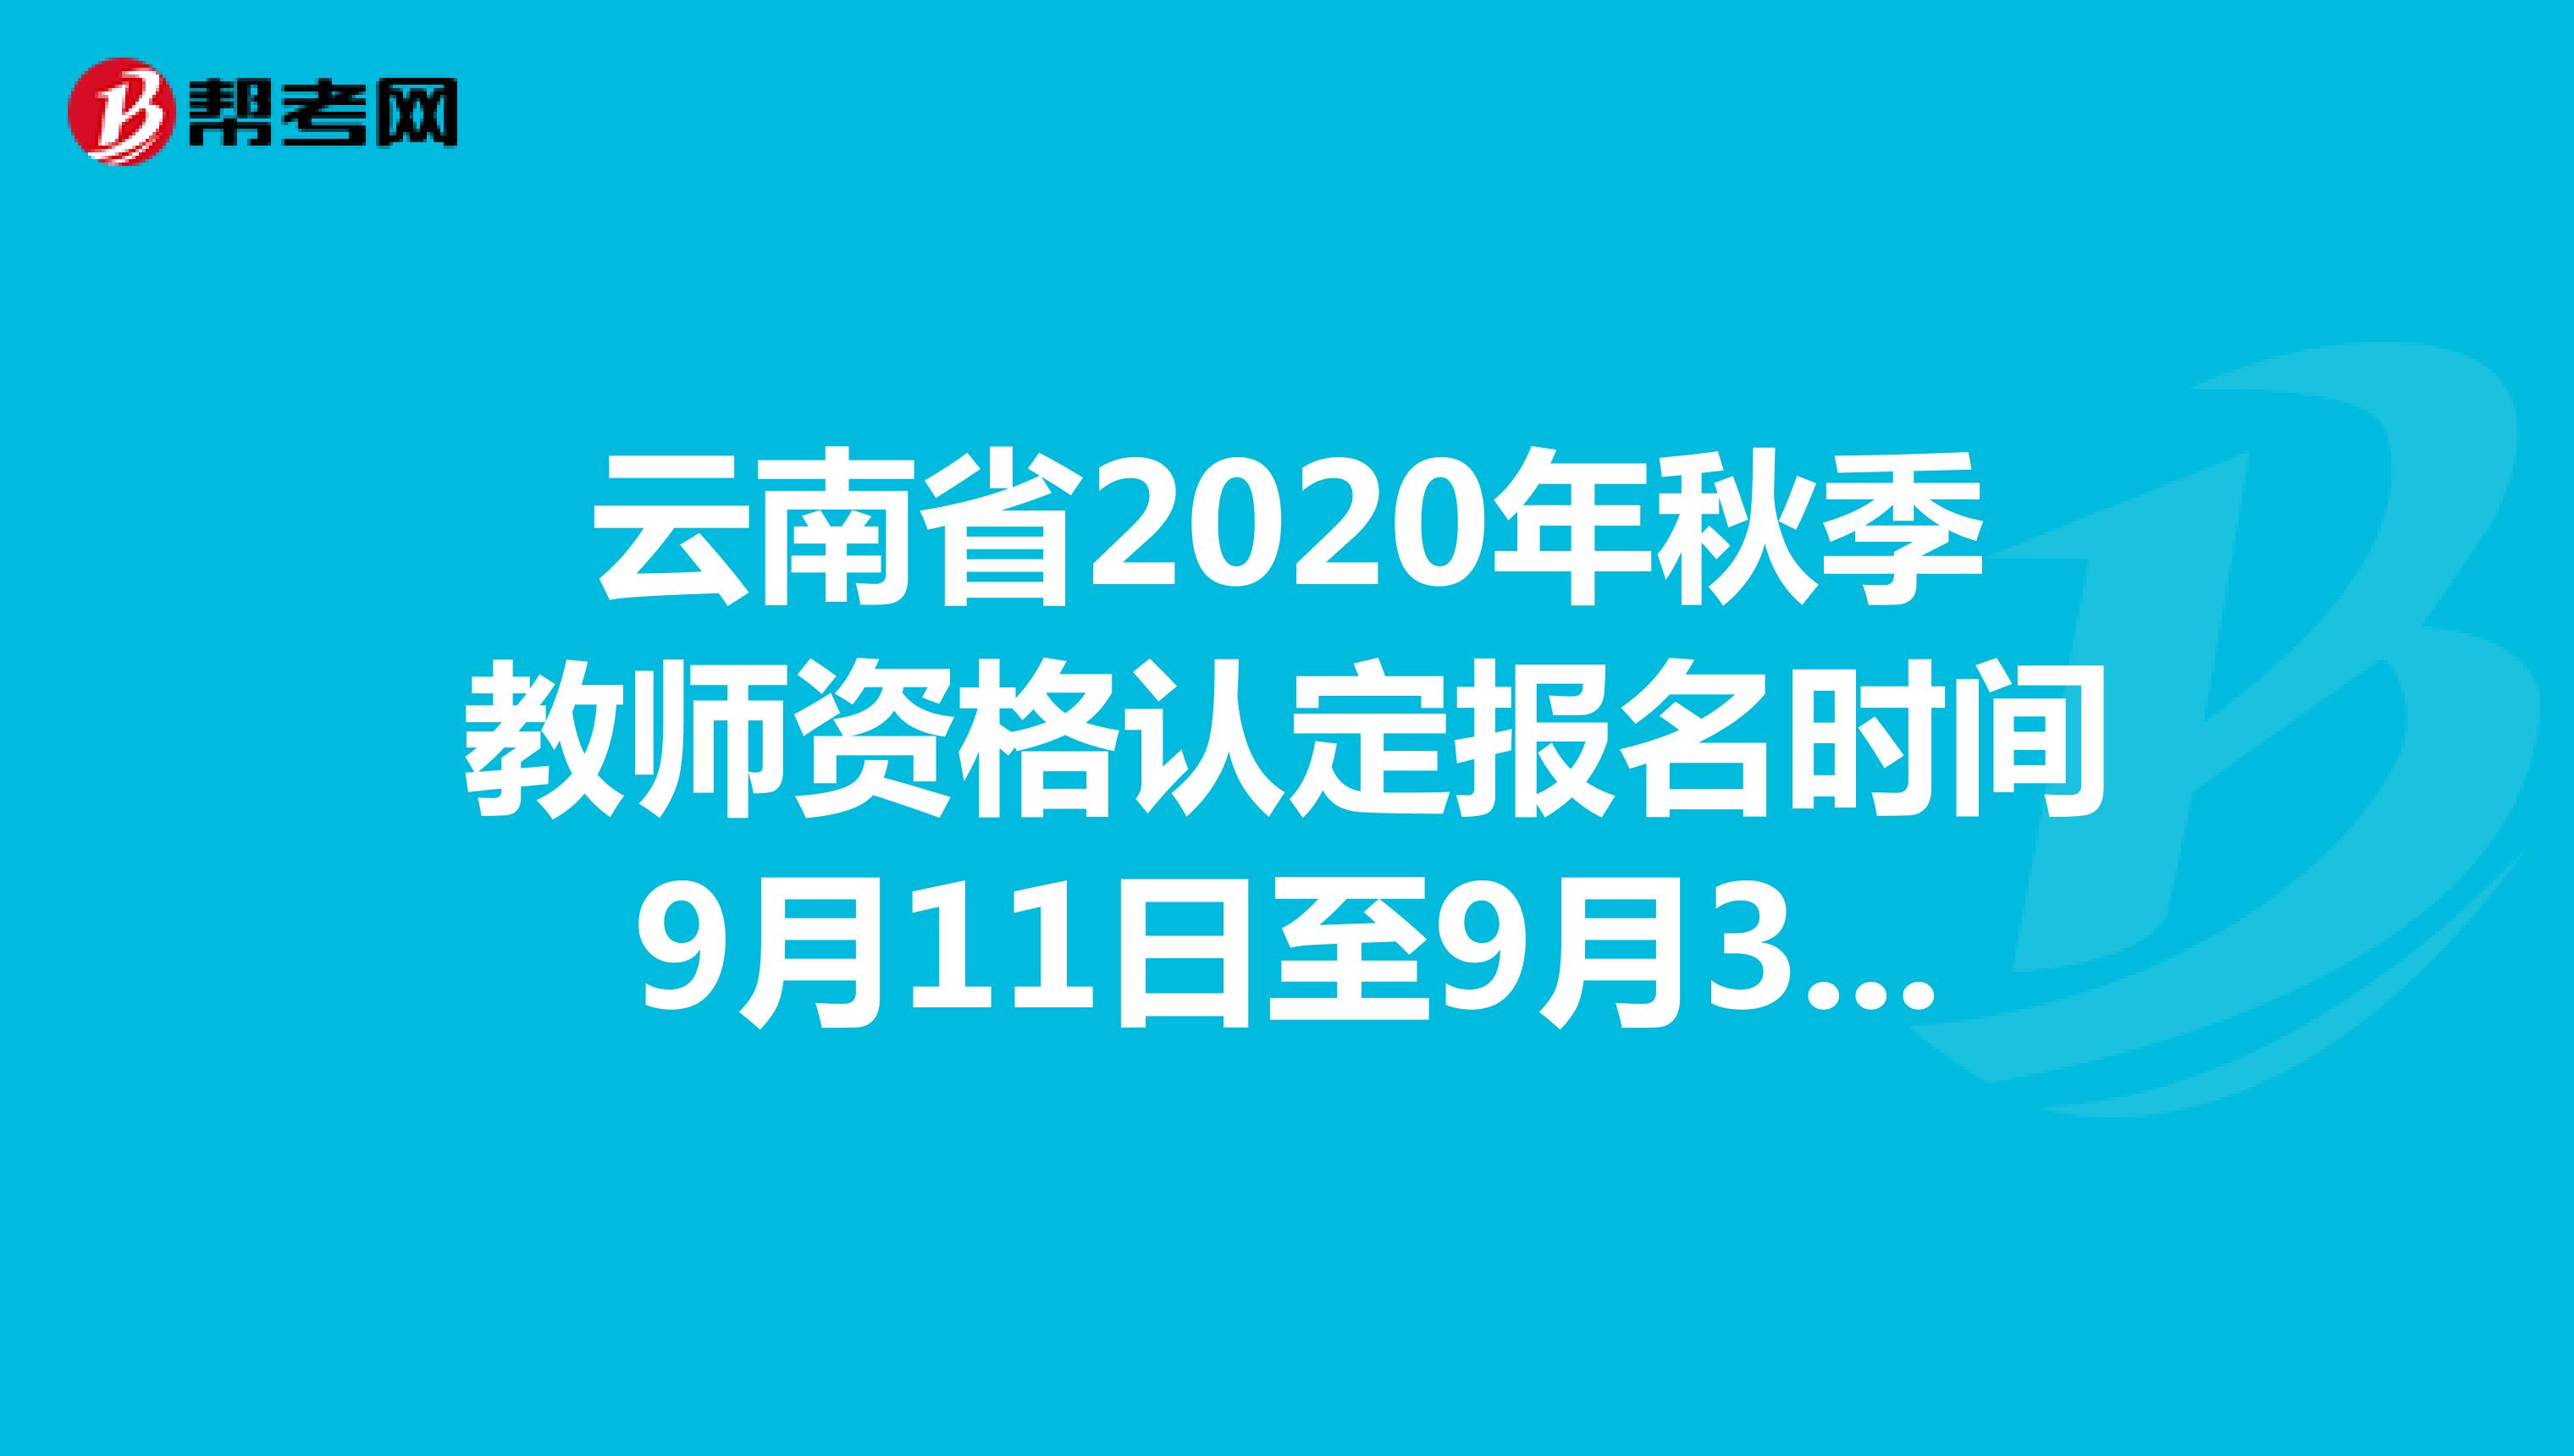 云南省2020年秋季教师资格认定报名时间9月11日至9月30日